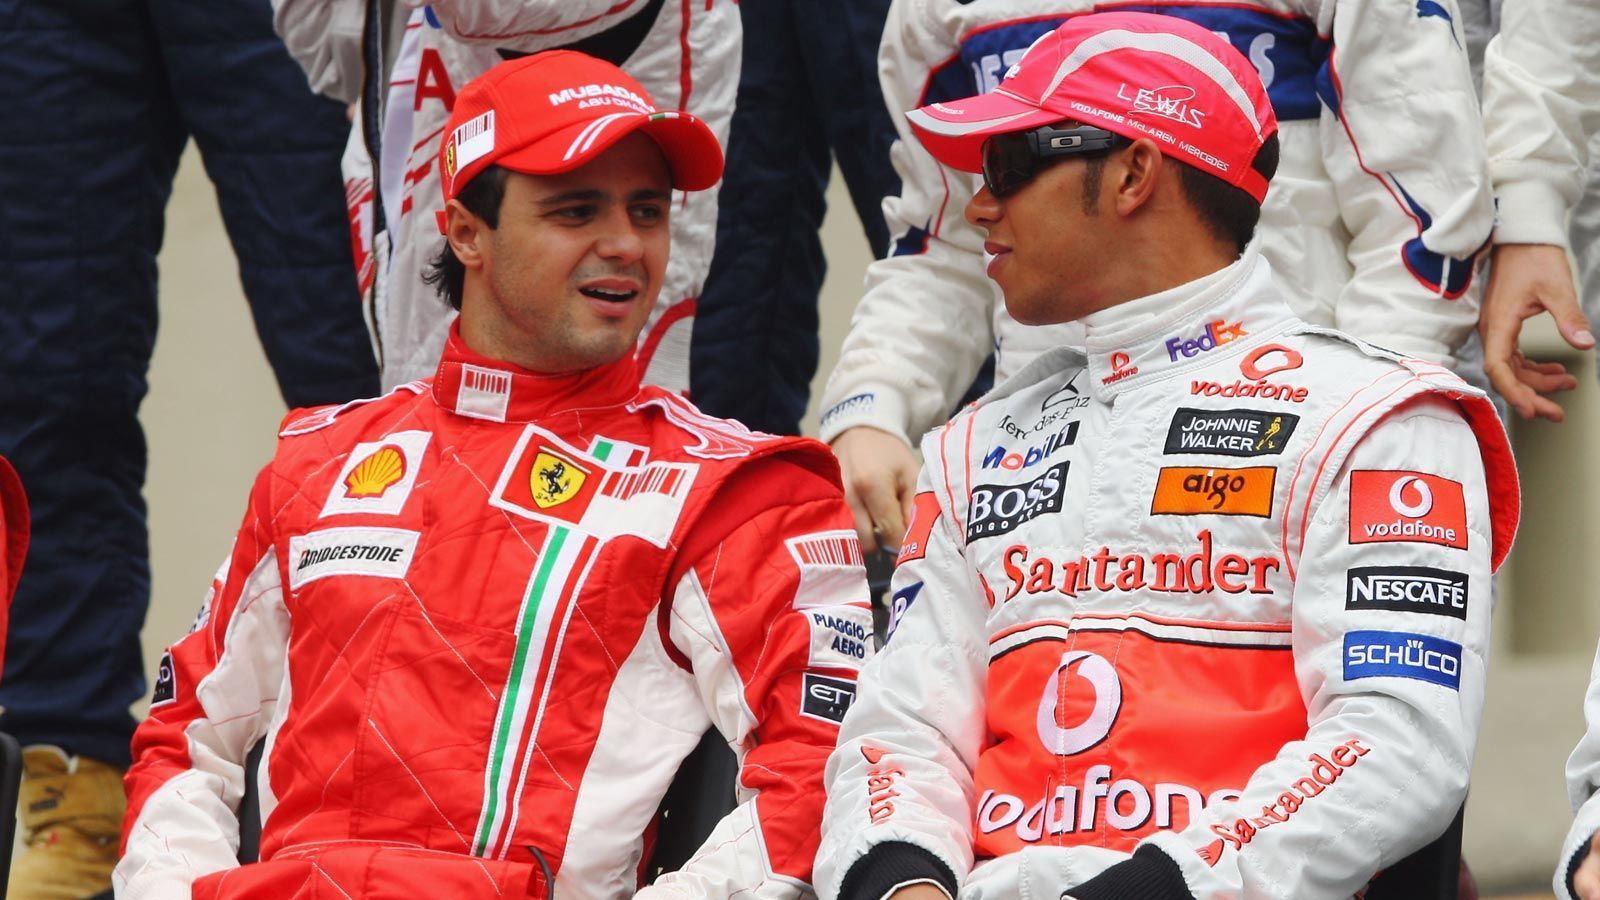 
                <strong>Lewis Hamilton vs. Felipe Massa (2008)</strong><br>
                Nachdem er 2007 die Krone nur knapp verpasste, gewann Lewis Hamilton 2008 seinen ersten Titel auf dramatische Art und Weise und ebenfalls hauchdünn. Sein Konkurrent Felipe Massa hatte das Rennen in seiner brasilianischen Heimat schon gewonnen, feierte bereits den vermeintlichen Titelgewinn, als Hamilton in der letzten Kurve Timo Glock überholte, somit den fünften Platz holte und mit einem Punkt Vorsprung Weltmeister wurde.
              